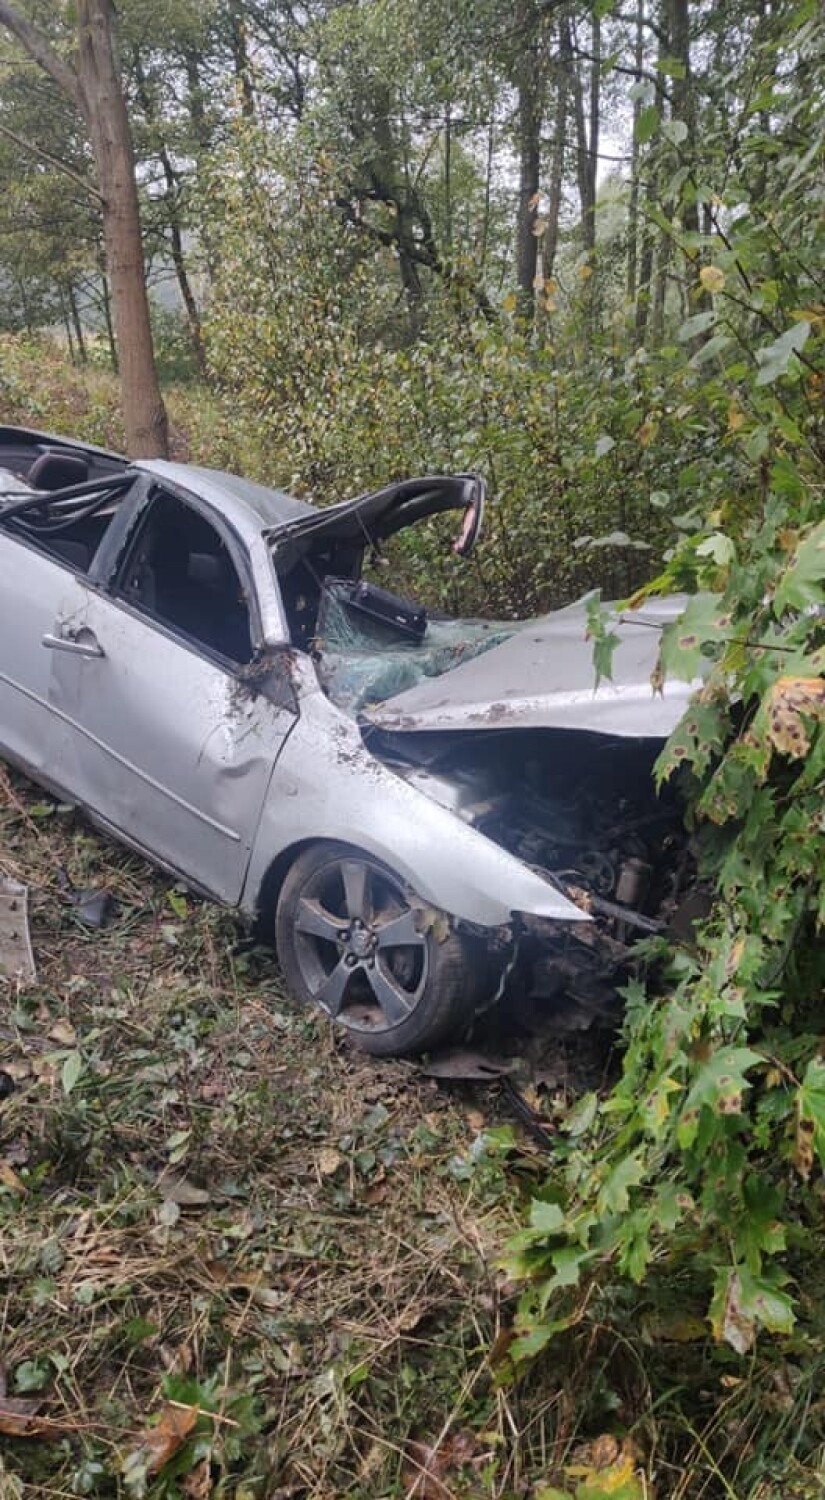 Śmiertelny wypadek na DK74 w okolicy miejscowości Rusiec. Auto uderzyło w drzewo, kierowca nie przeżył